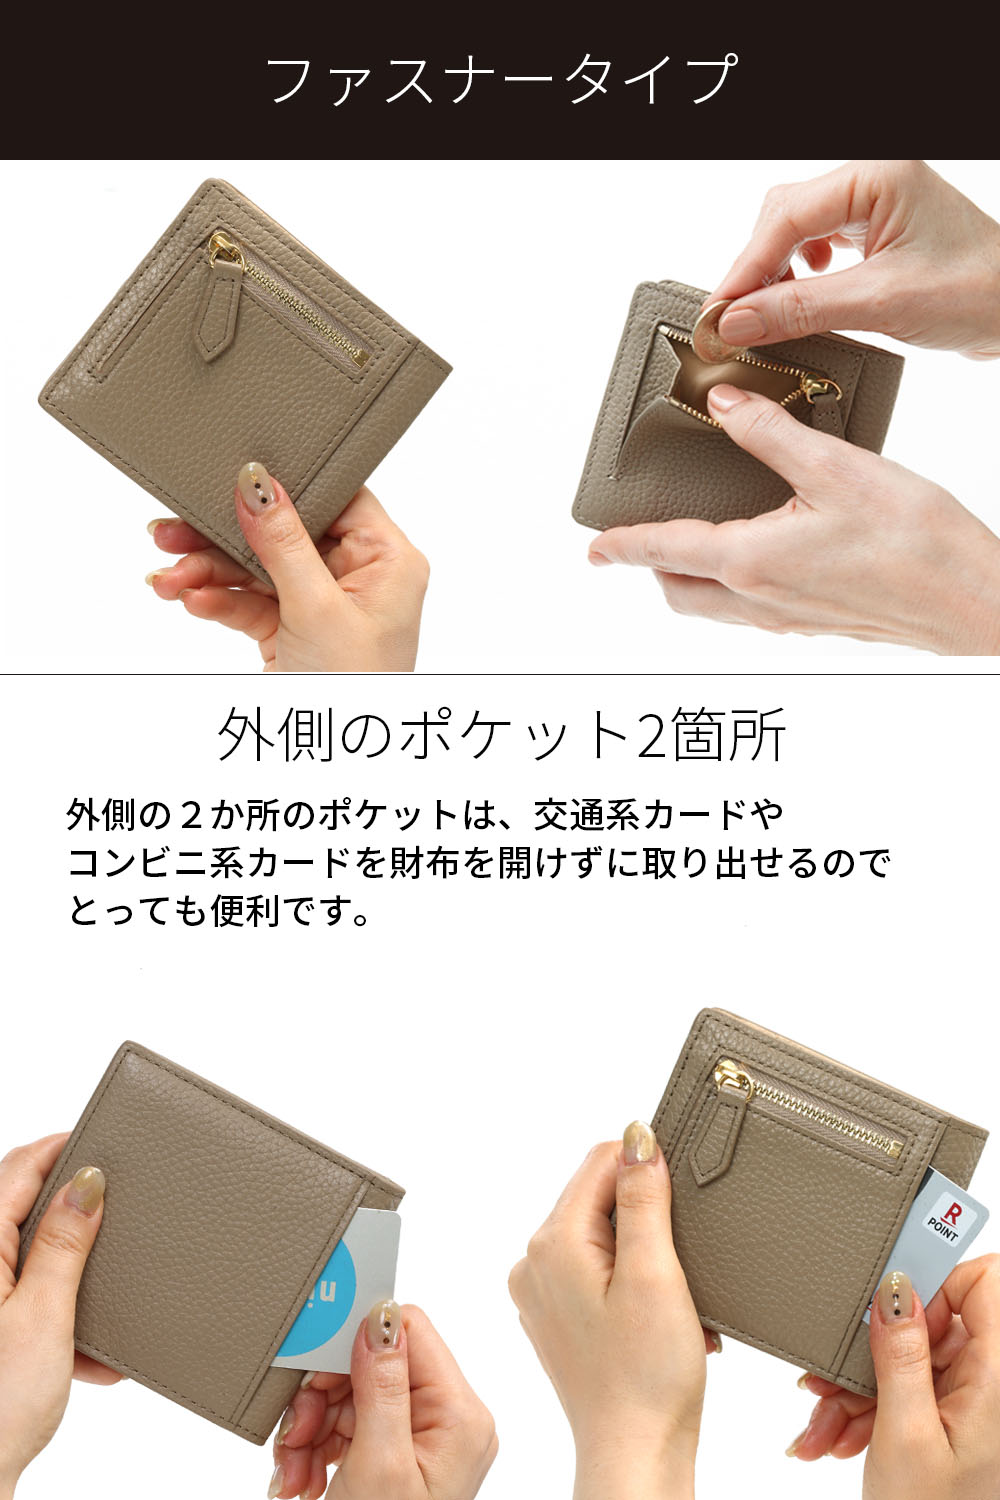 素敵でユニークな 薄くて小さい大容量財布「BASHARA Spilim」 財布 